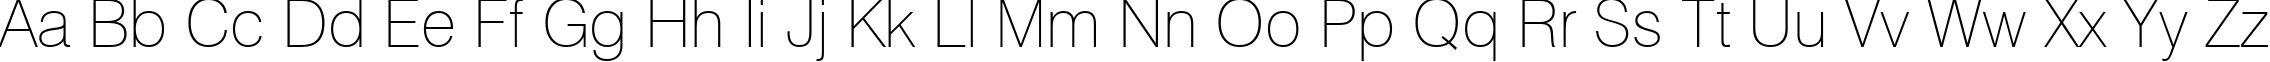 Пример написания английского алфавита шрифтом font446